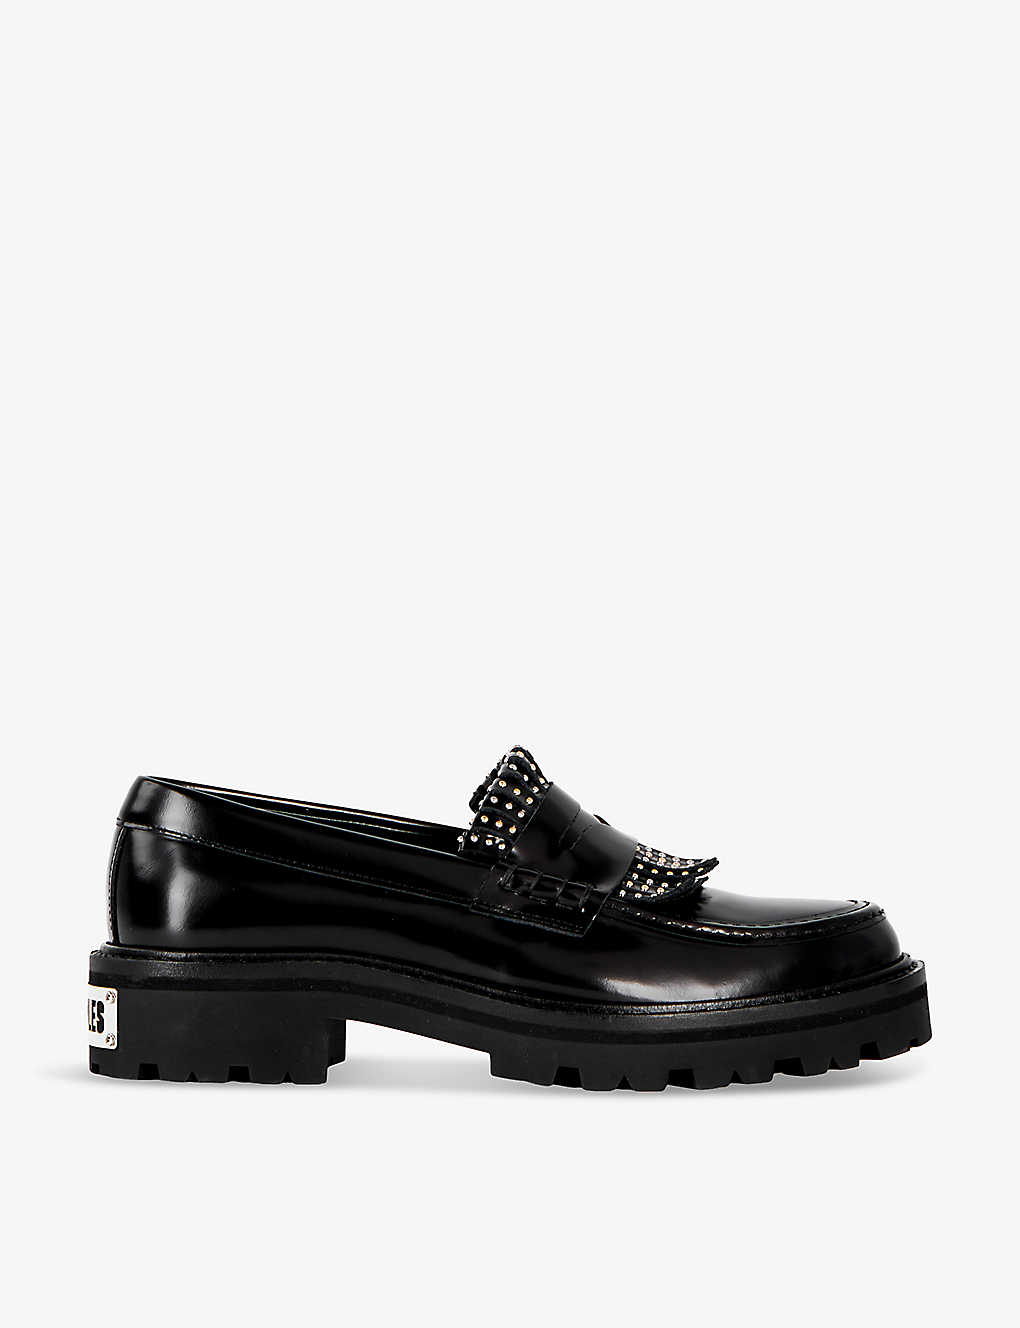 Shop The Kooples Women's Black Stud-embellished Leather Loafers